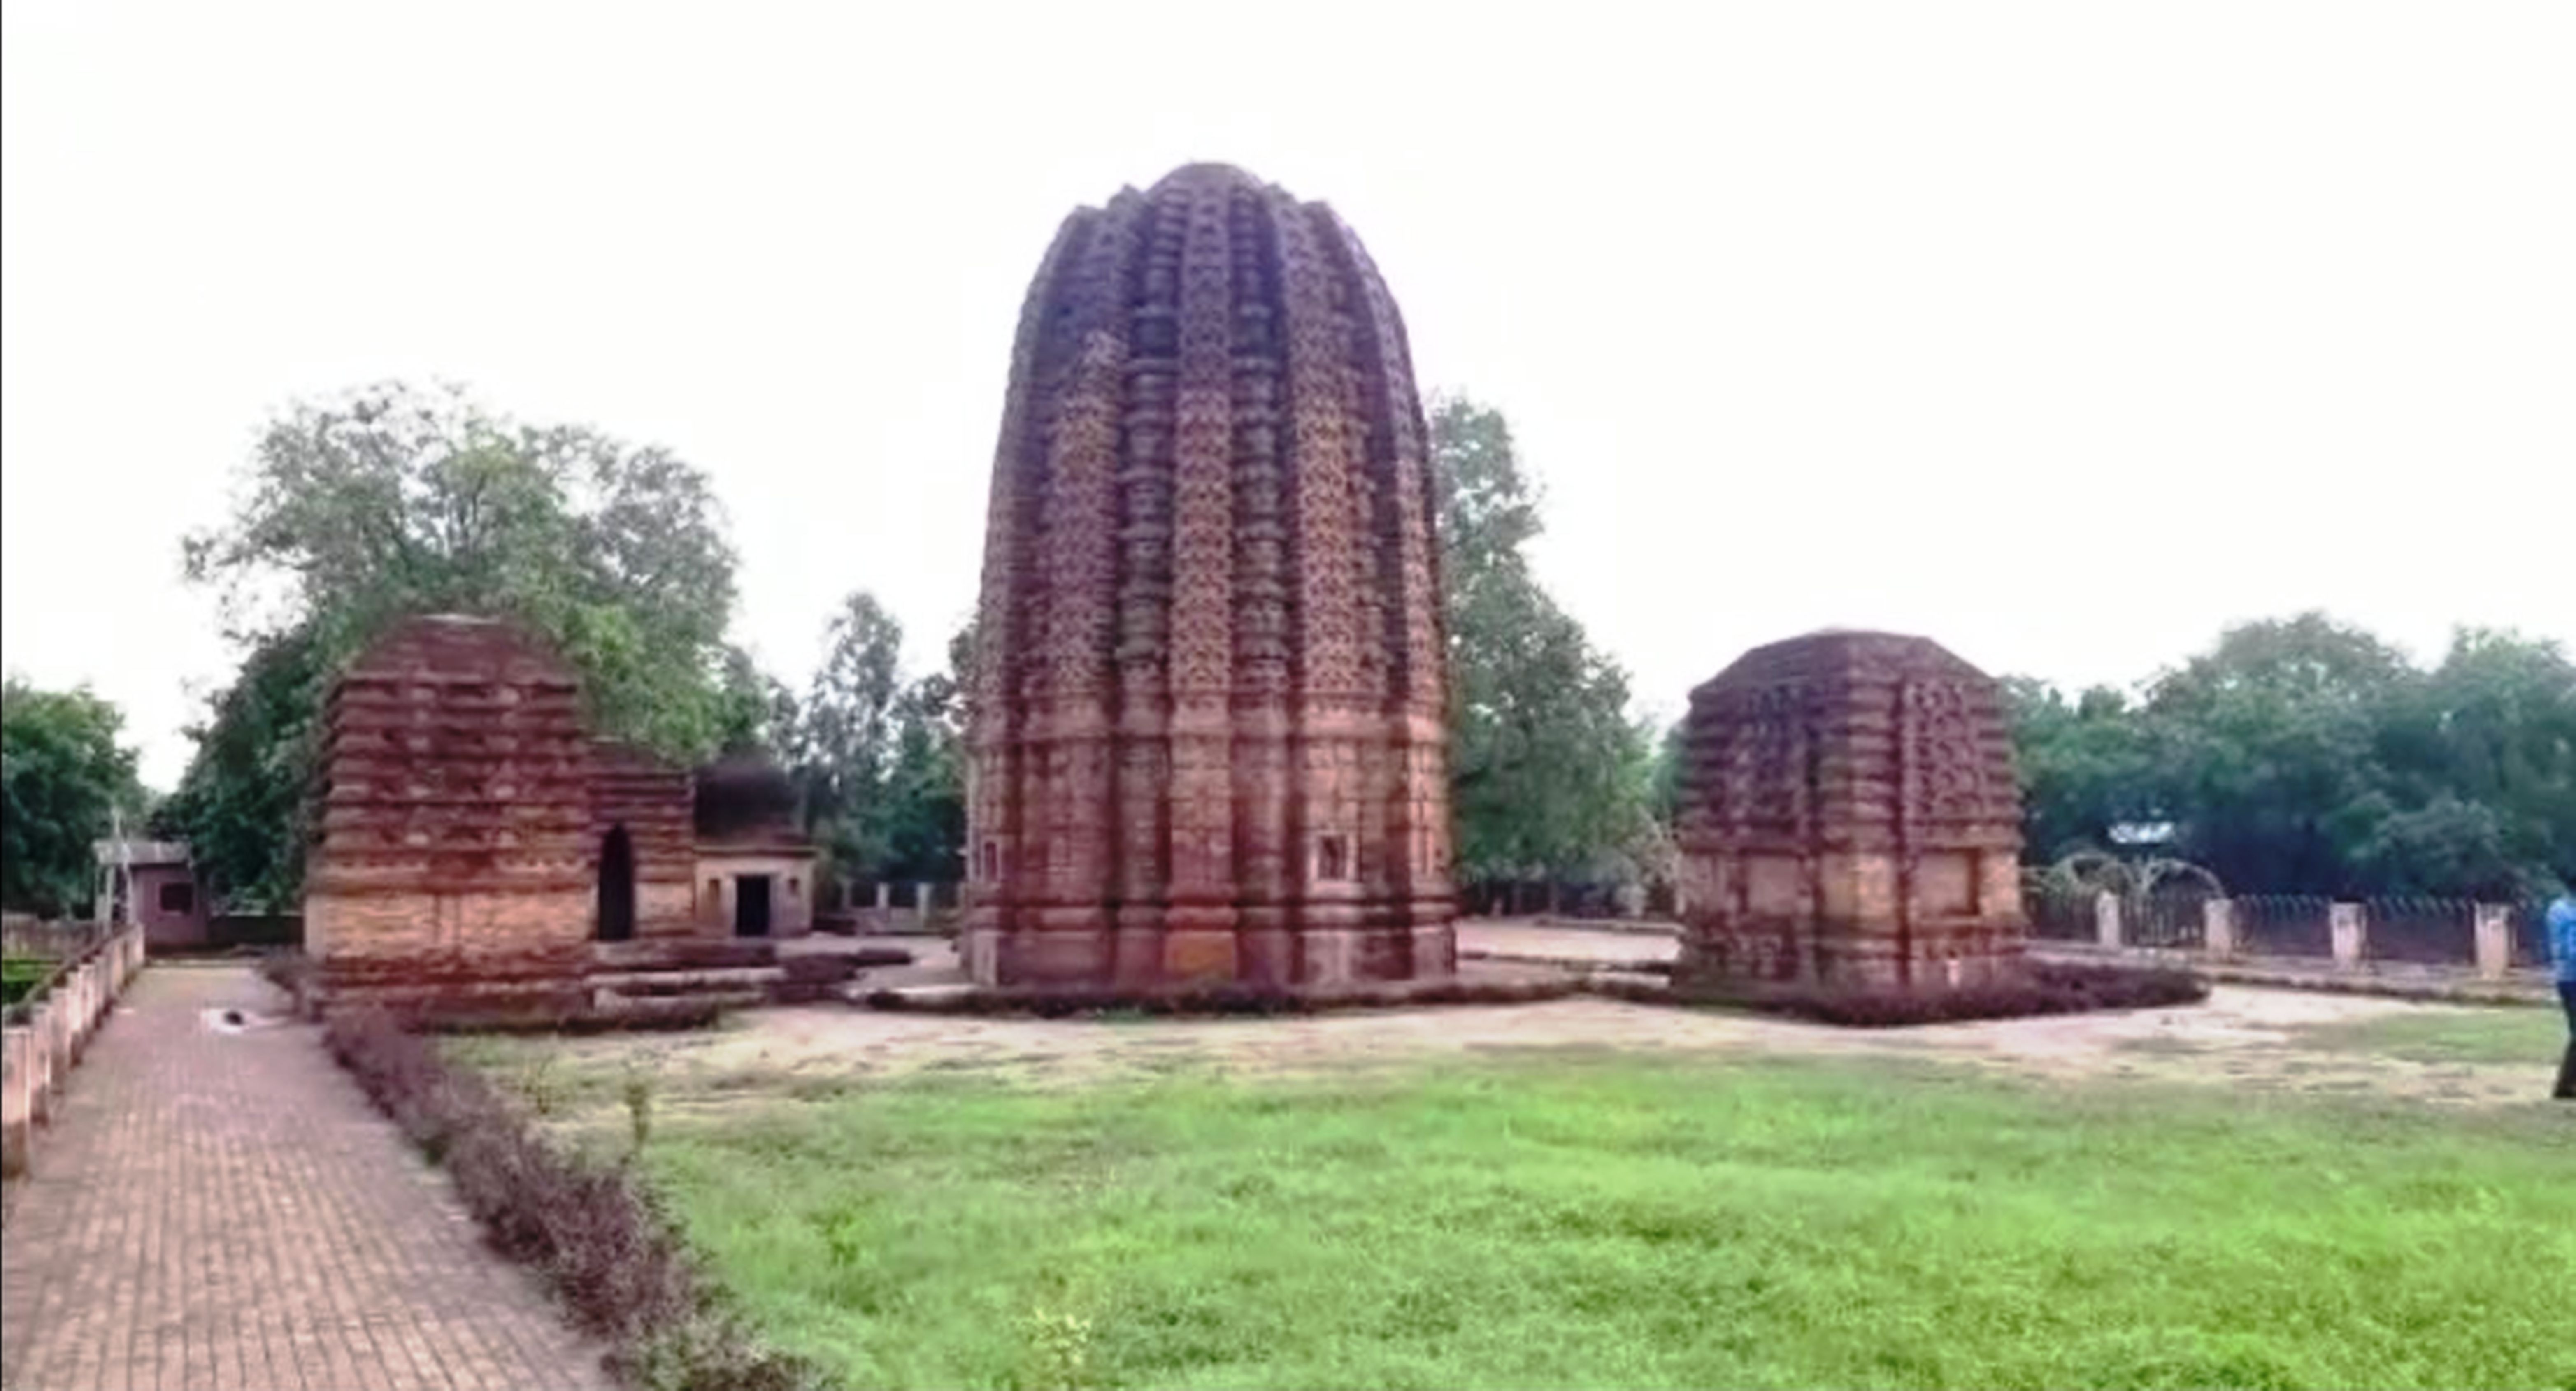 9वीं सदी के लाखौरी ईट से निर्मित इस मंदिर में छिपे हैं कई चमत्कारी रहस्य